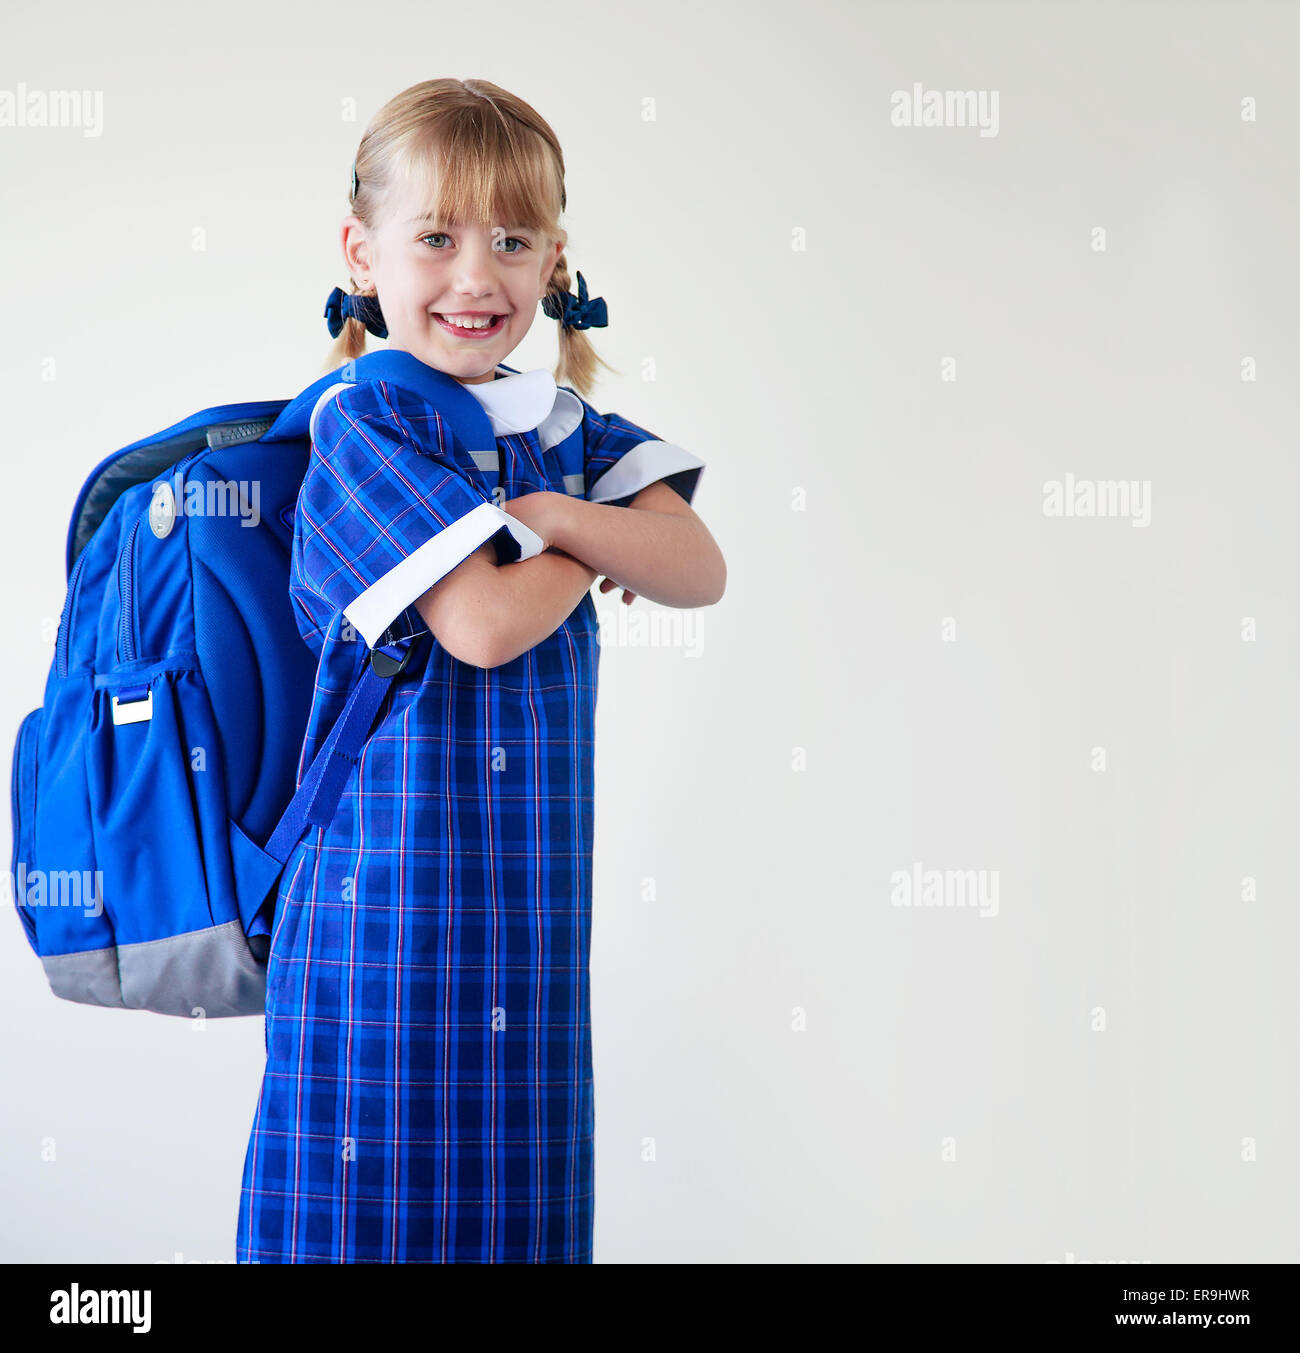 Bambina vestito nella sua uniforme scolastica e zaino pronto ad andare a scuola Foto Stock